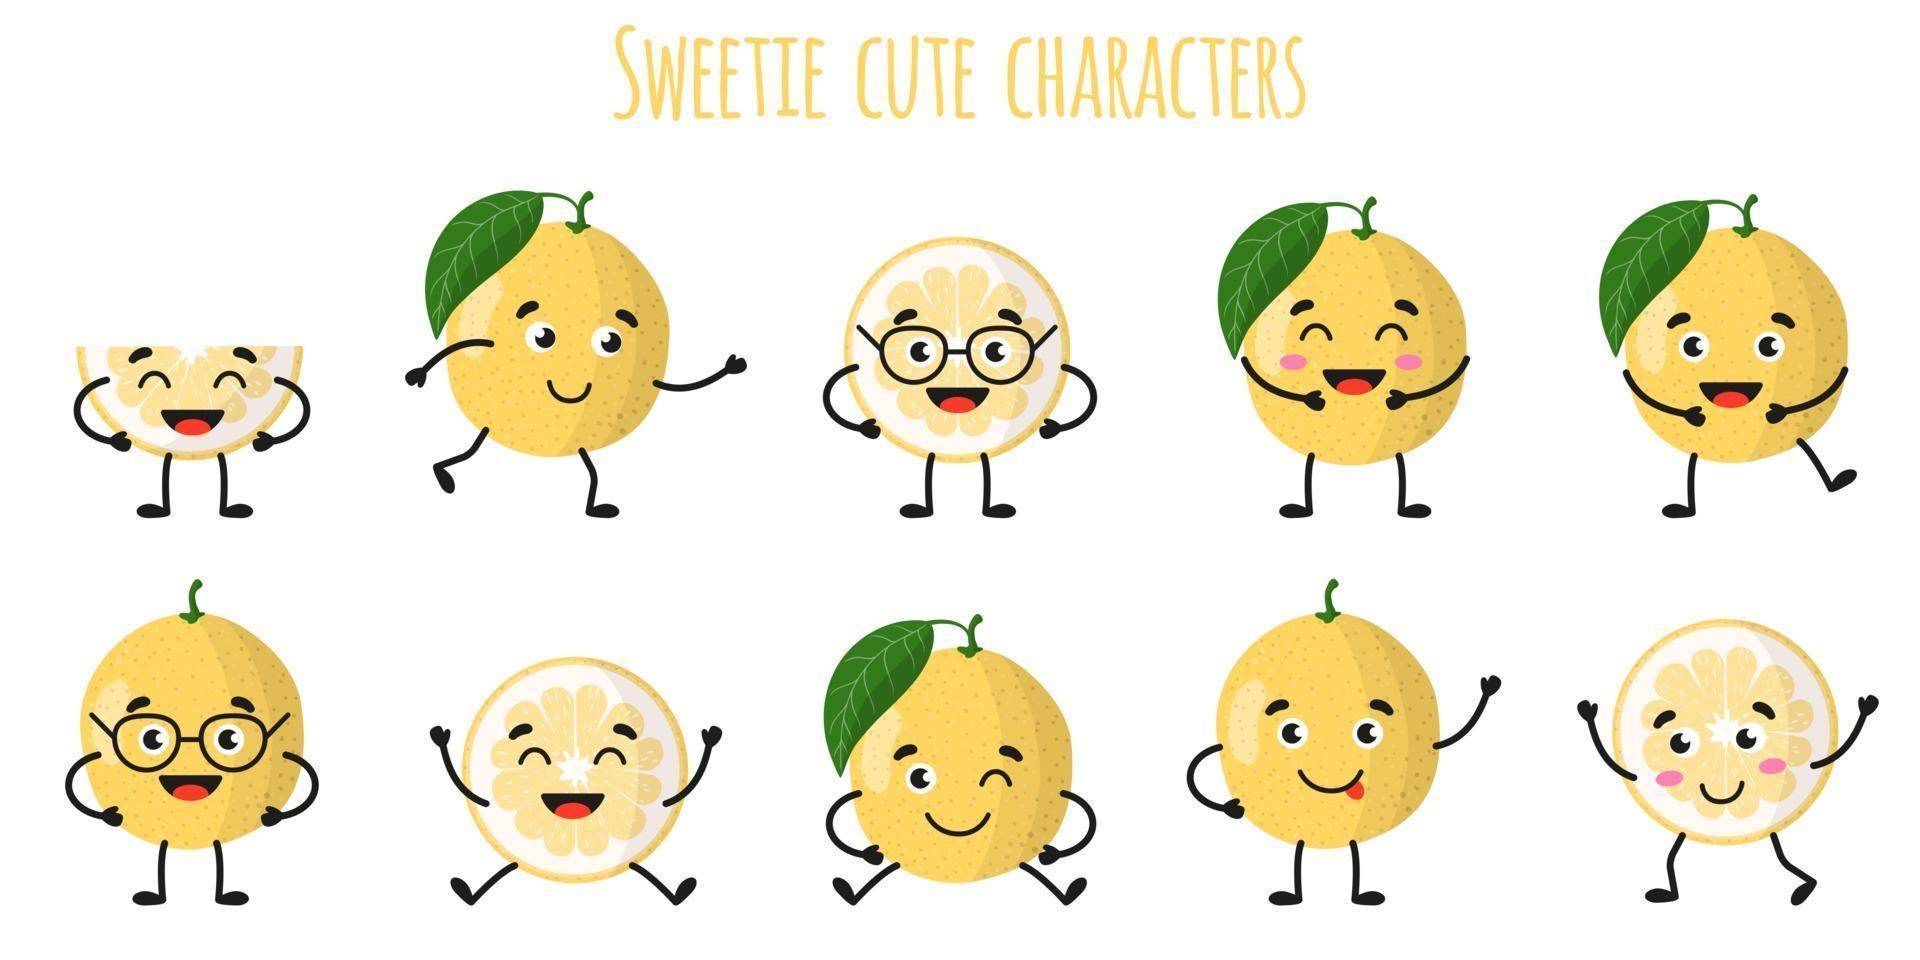 lieverd citrusvruchten leuke grappige vrolijke karakters met verschillende poses en emoties. vector